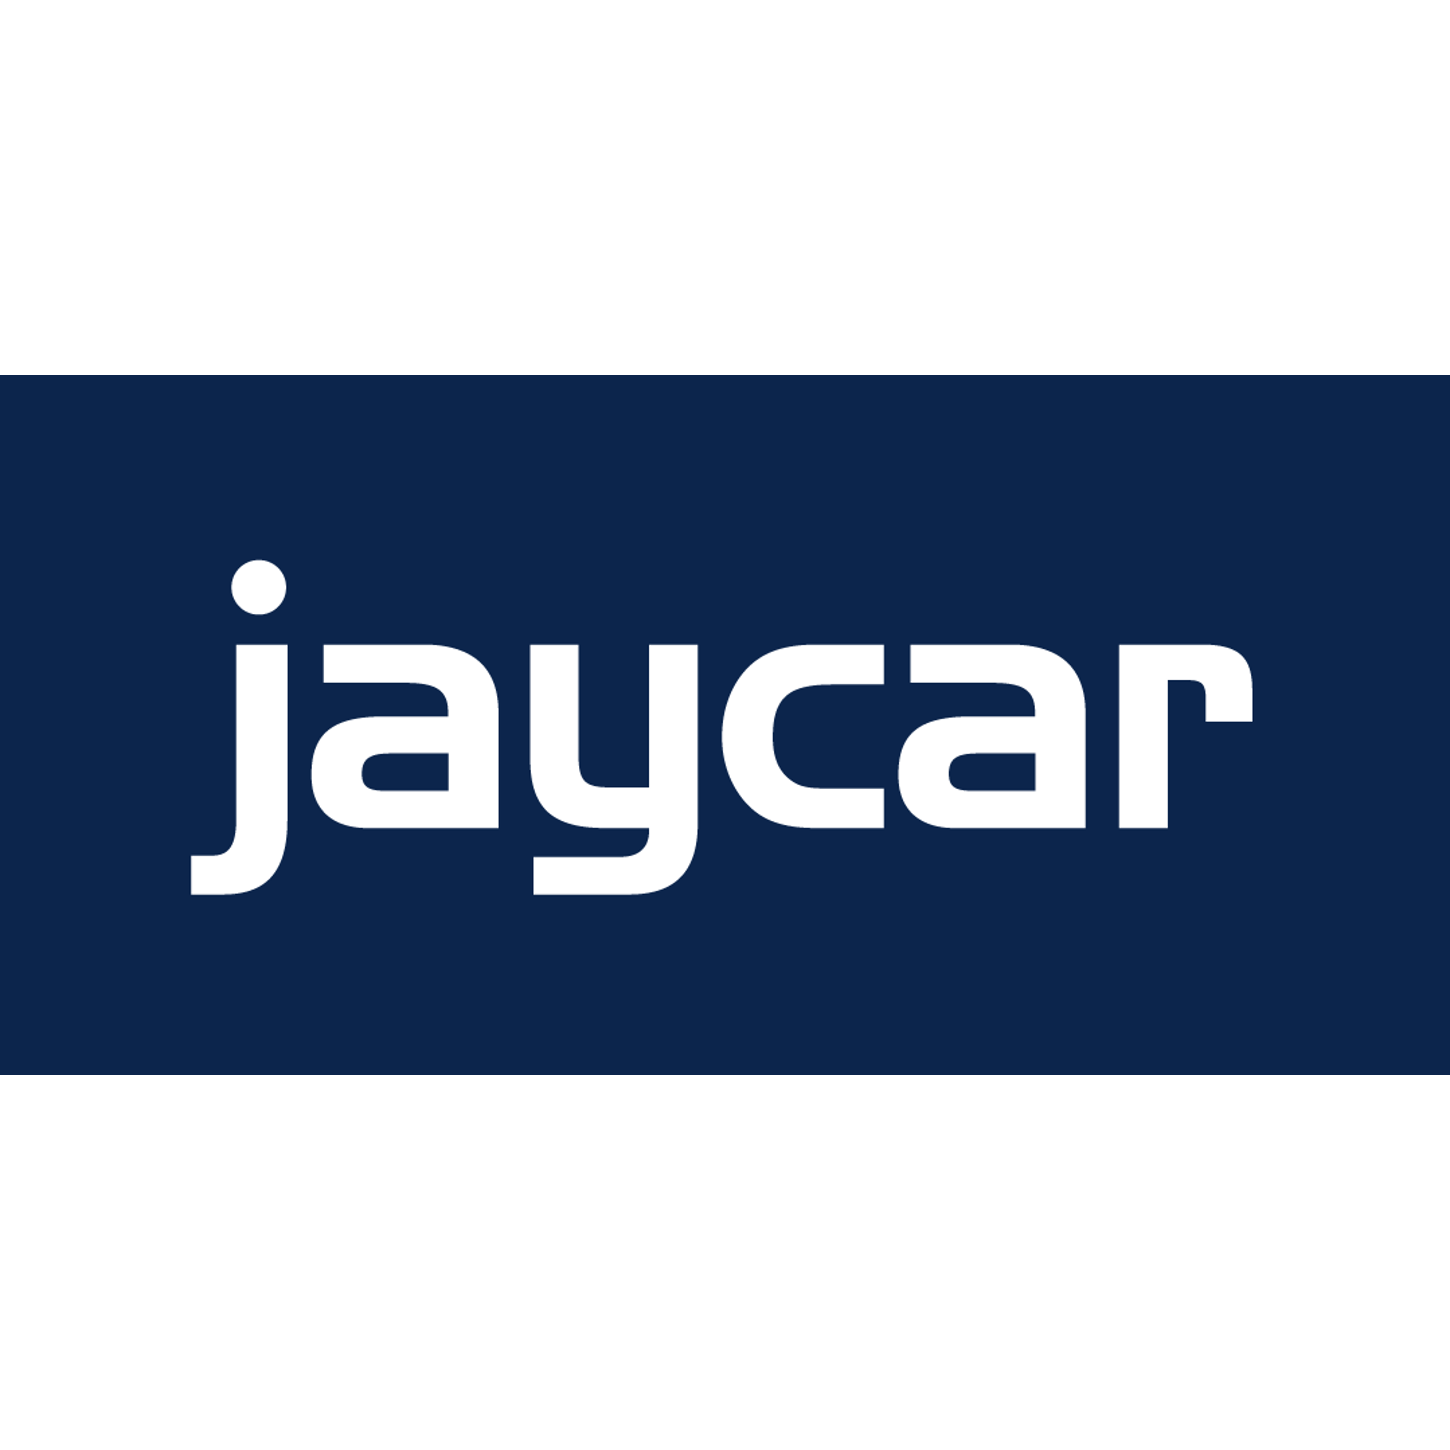 Jaycar Electronics Bathurst - Kelso, NSW 2795 - (02) 6323 2902 | ShowMeLocal.com